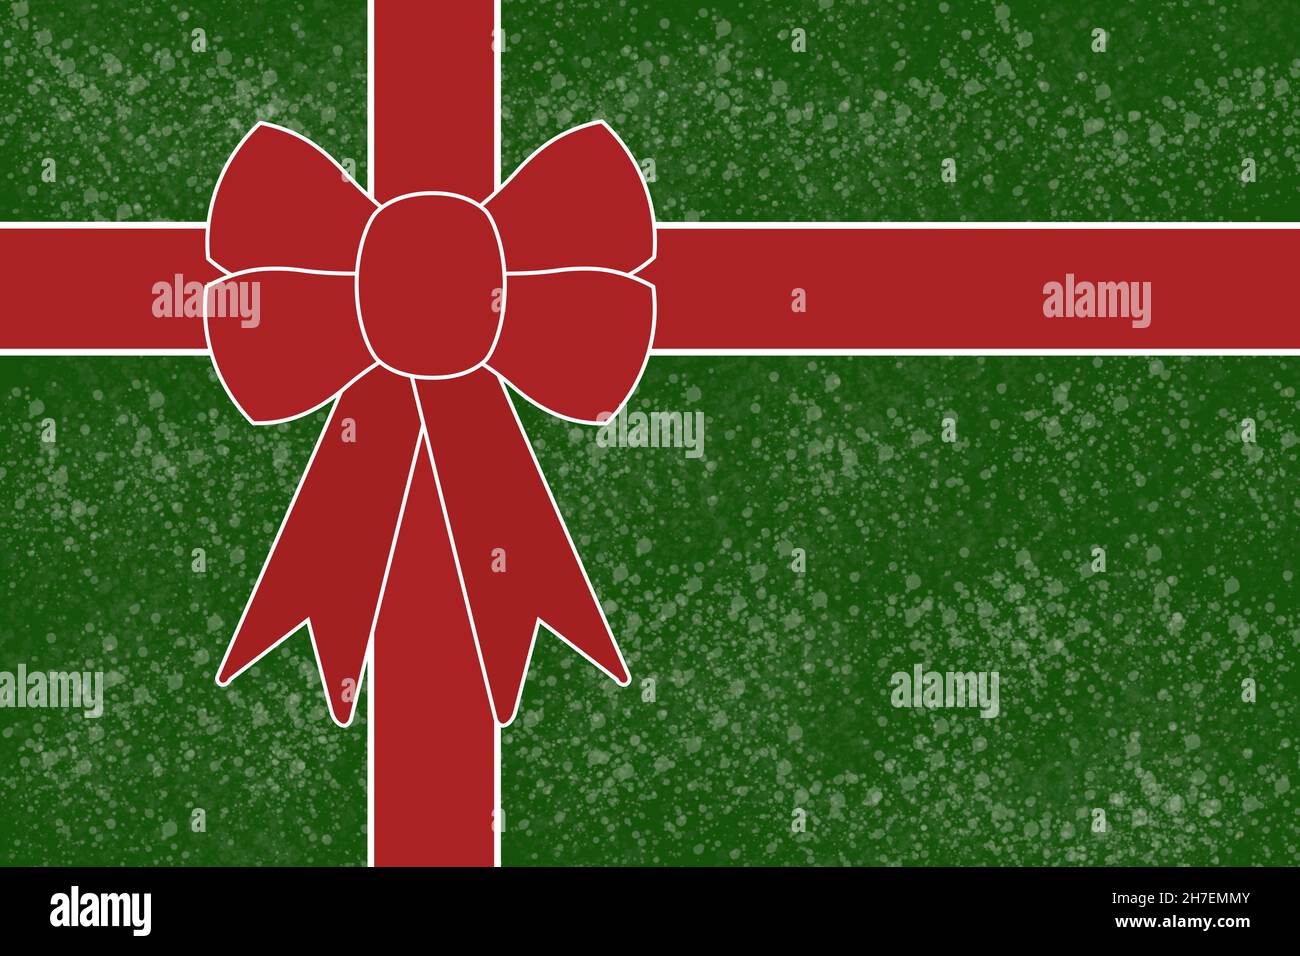 Texture représentant un cadeau enveloppé de papier vert avec une texture blanche et orné d'un ruban rouge et d'un noeud avec une bordure blanche. Banque D'Images